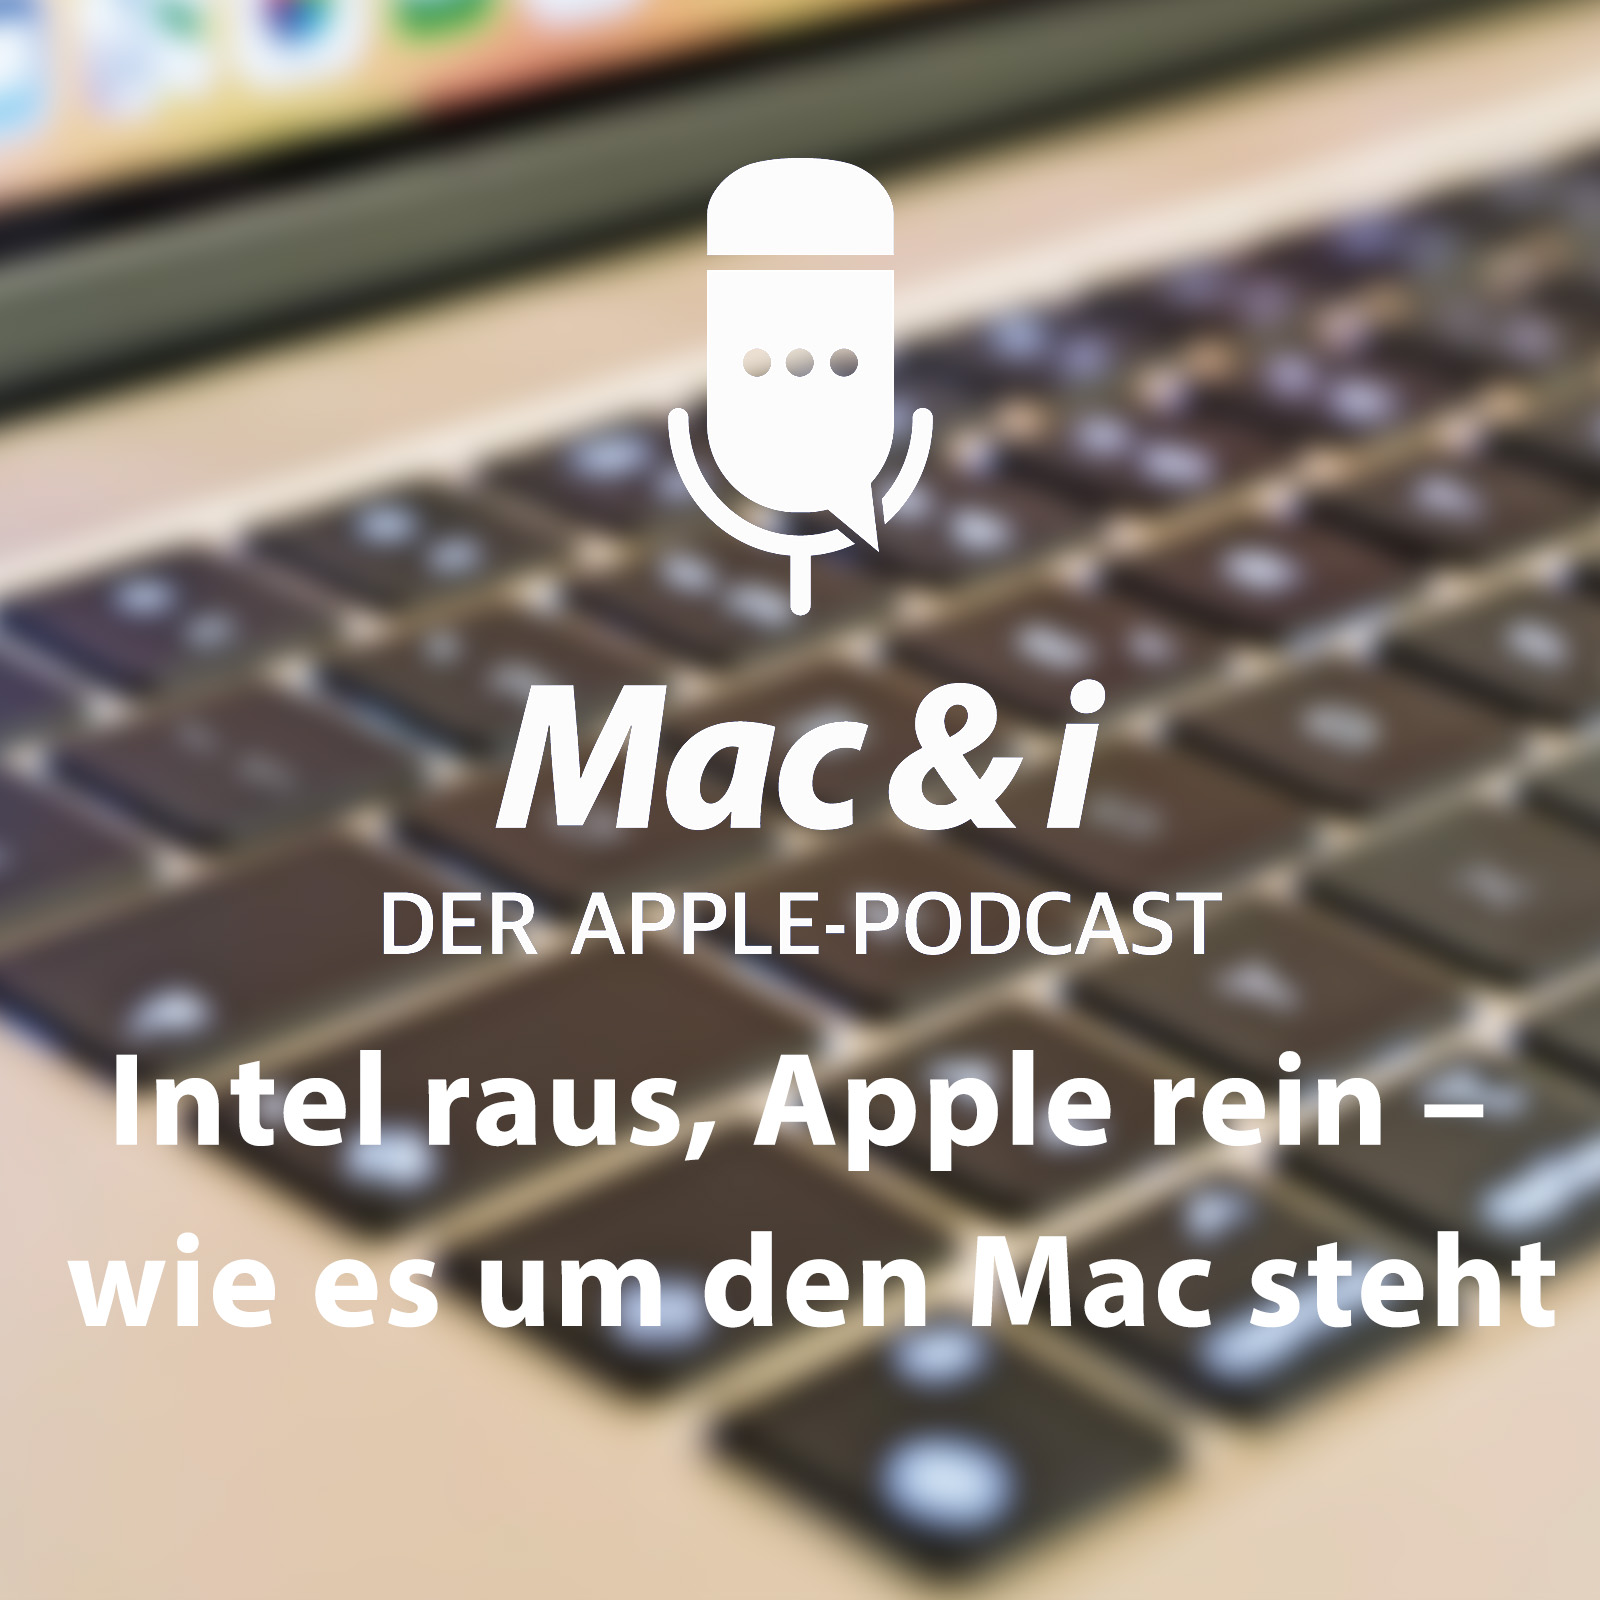 Intel raus, Apple rein – wie es um den Mac steht im Podcast von Mac & i